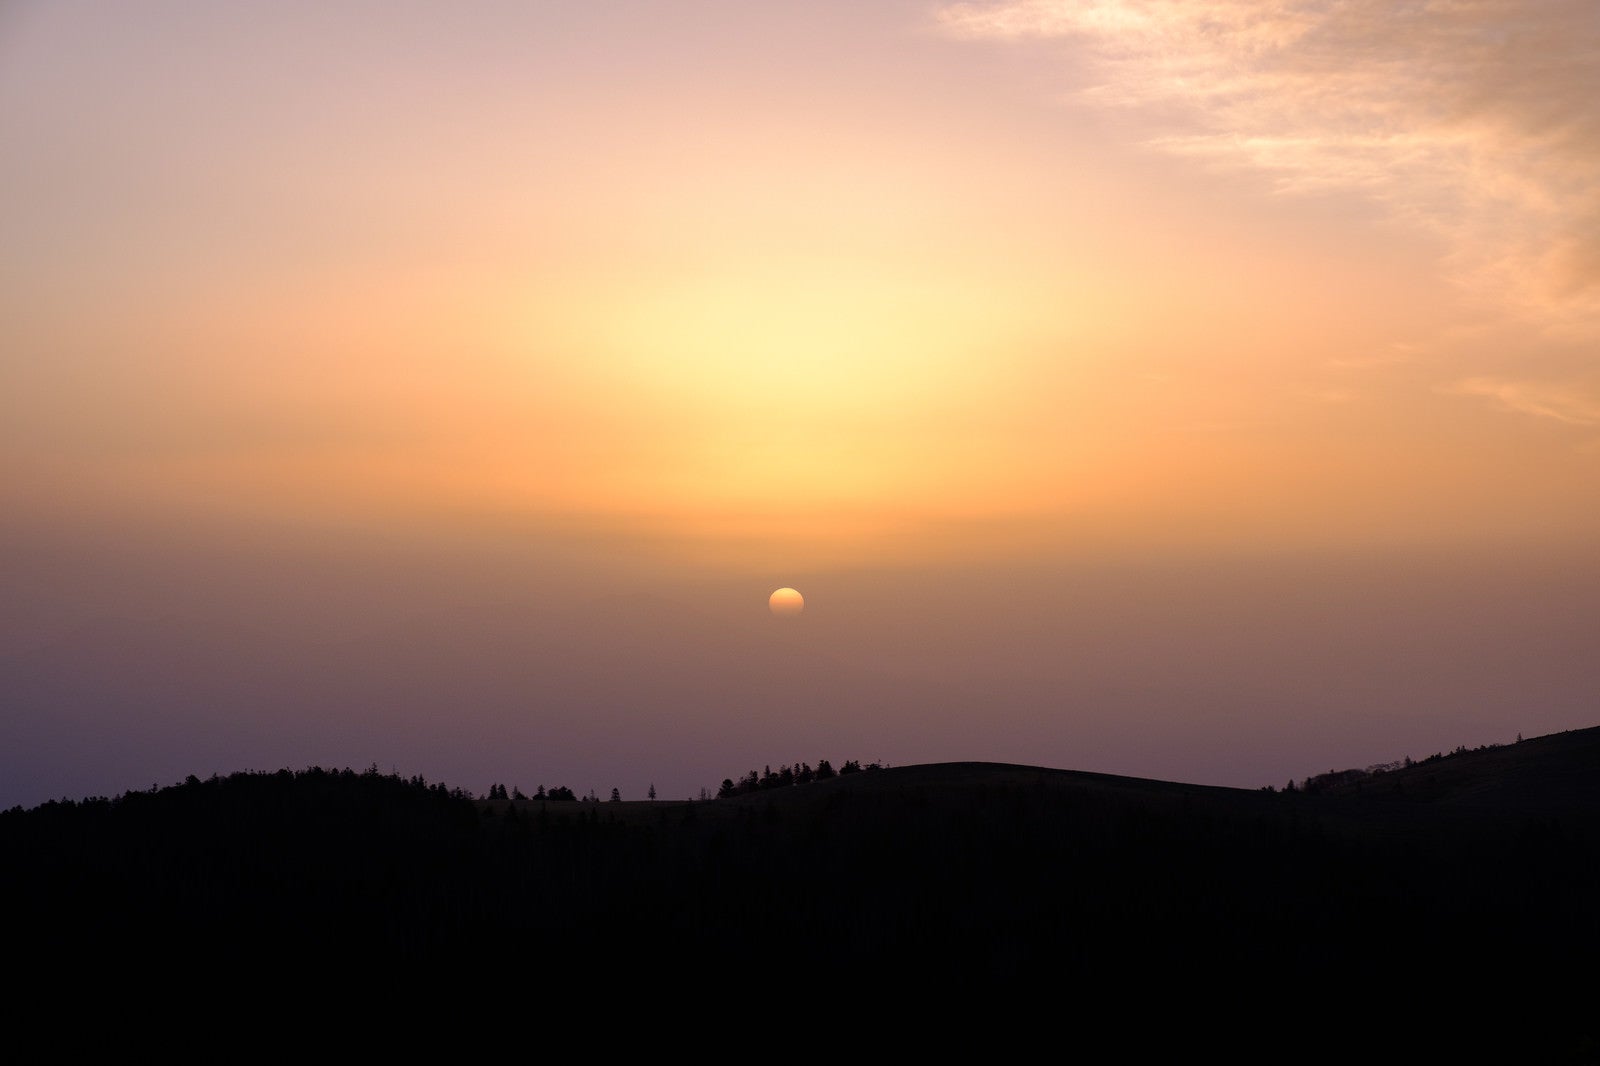 「美ヶ原高原の夕焼けシルエット」の写真